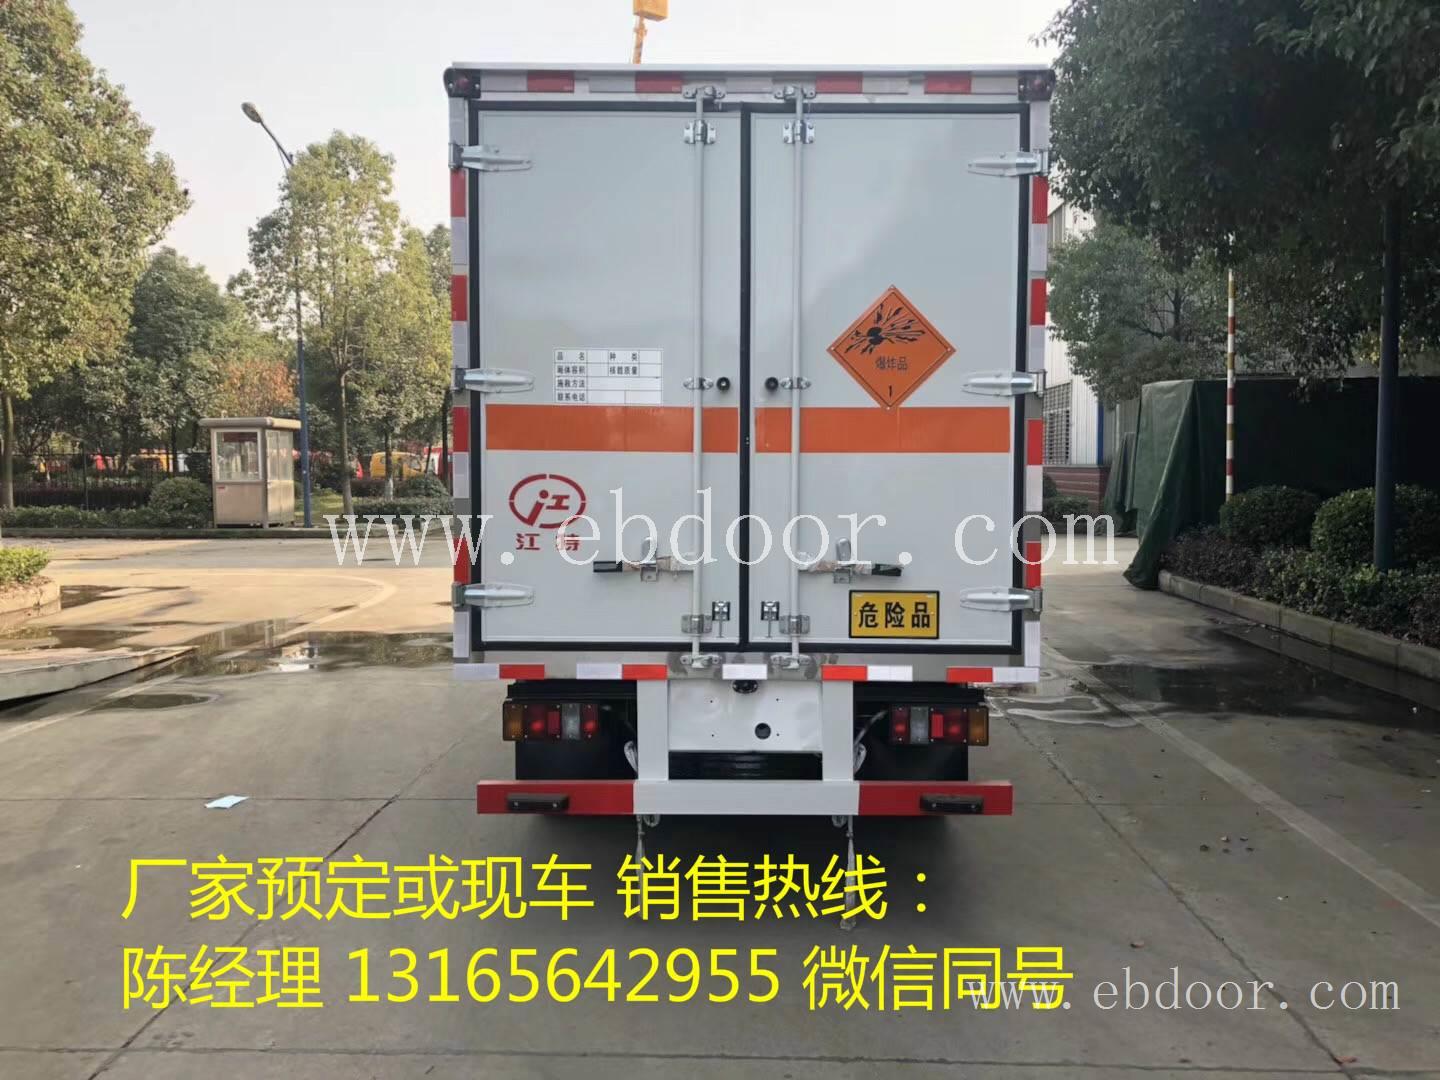 渭南/宝鸡新顺达上户3吨 国六爆破车箱长4.2米全国销售前三